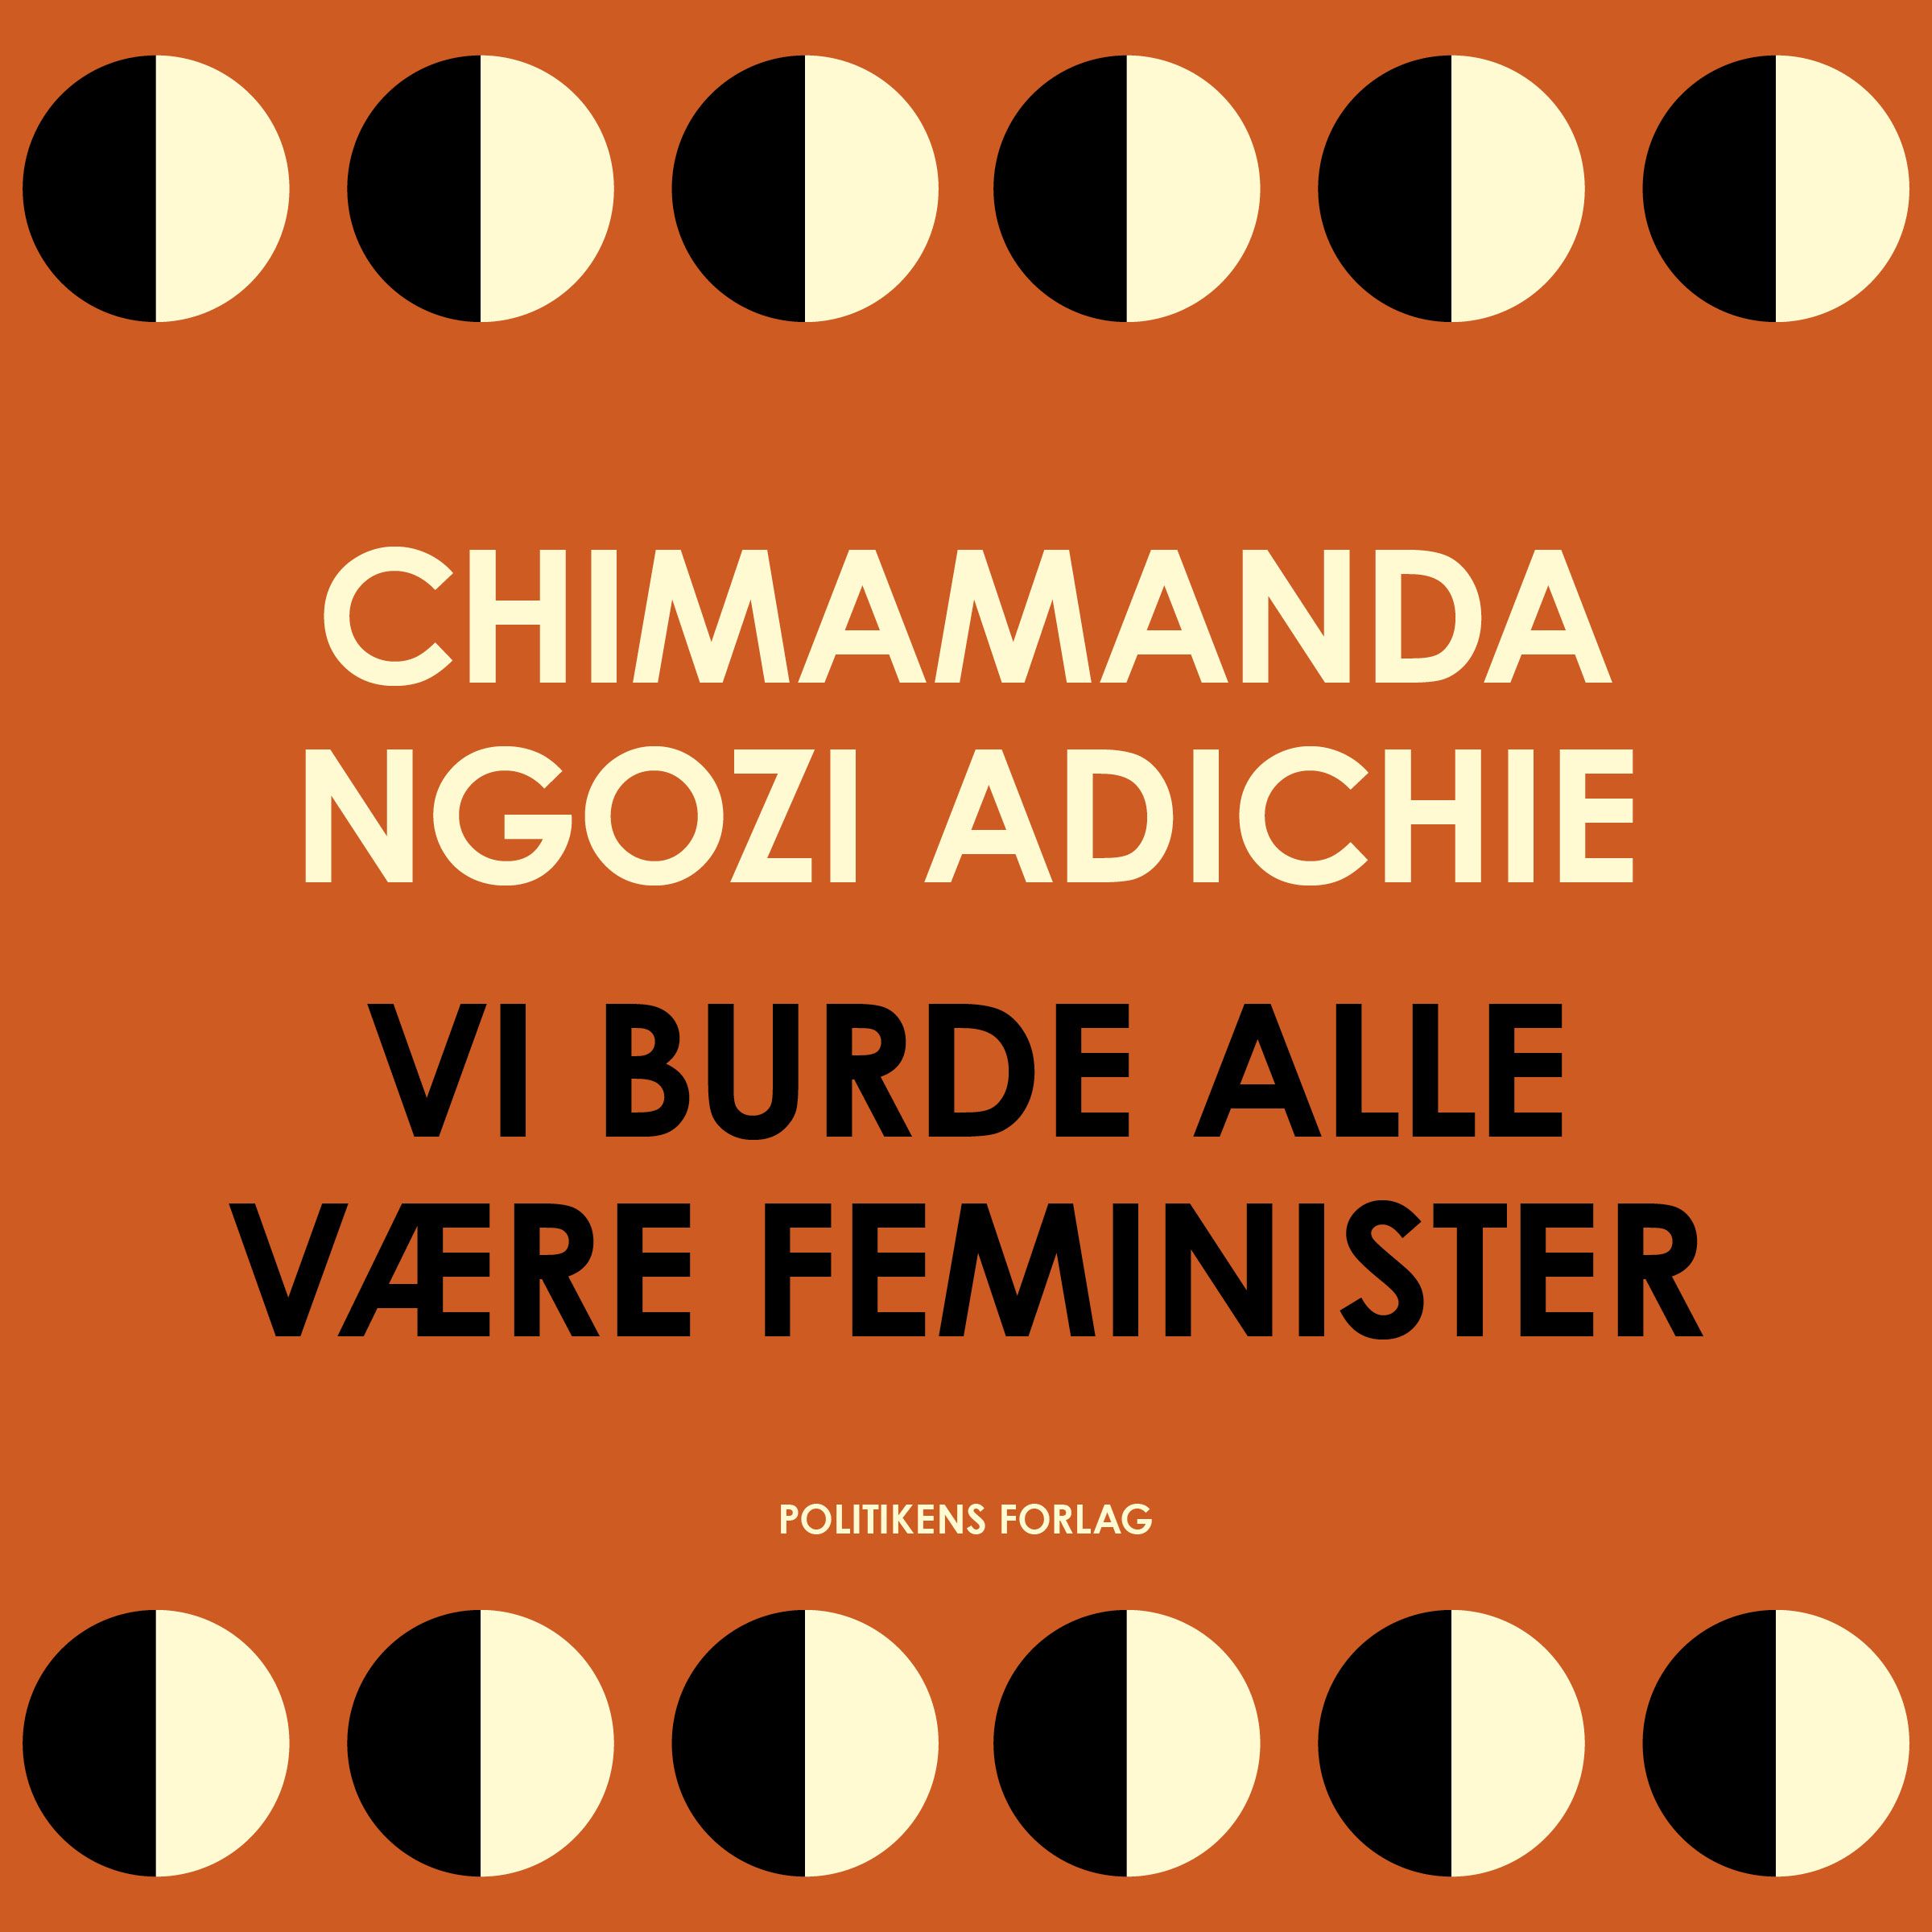 Vi burde alle være feminister, lydbog af Chimamanda Ngozi Adichie